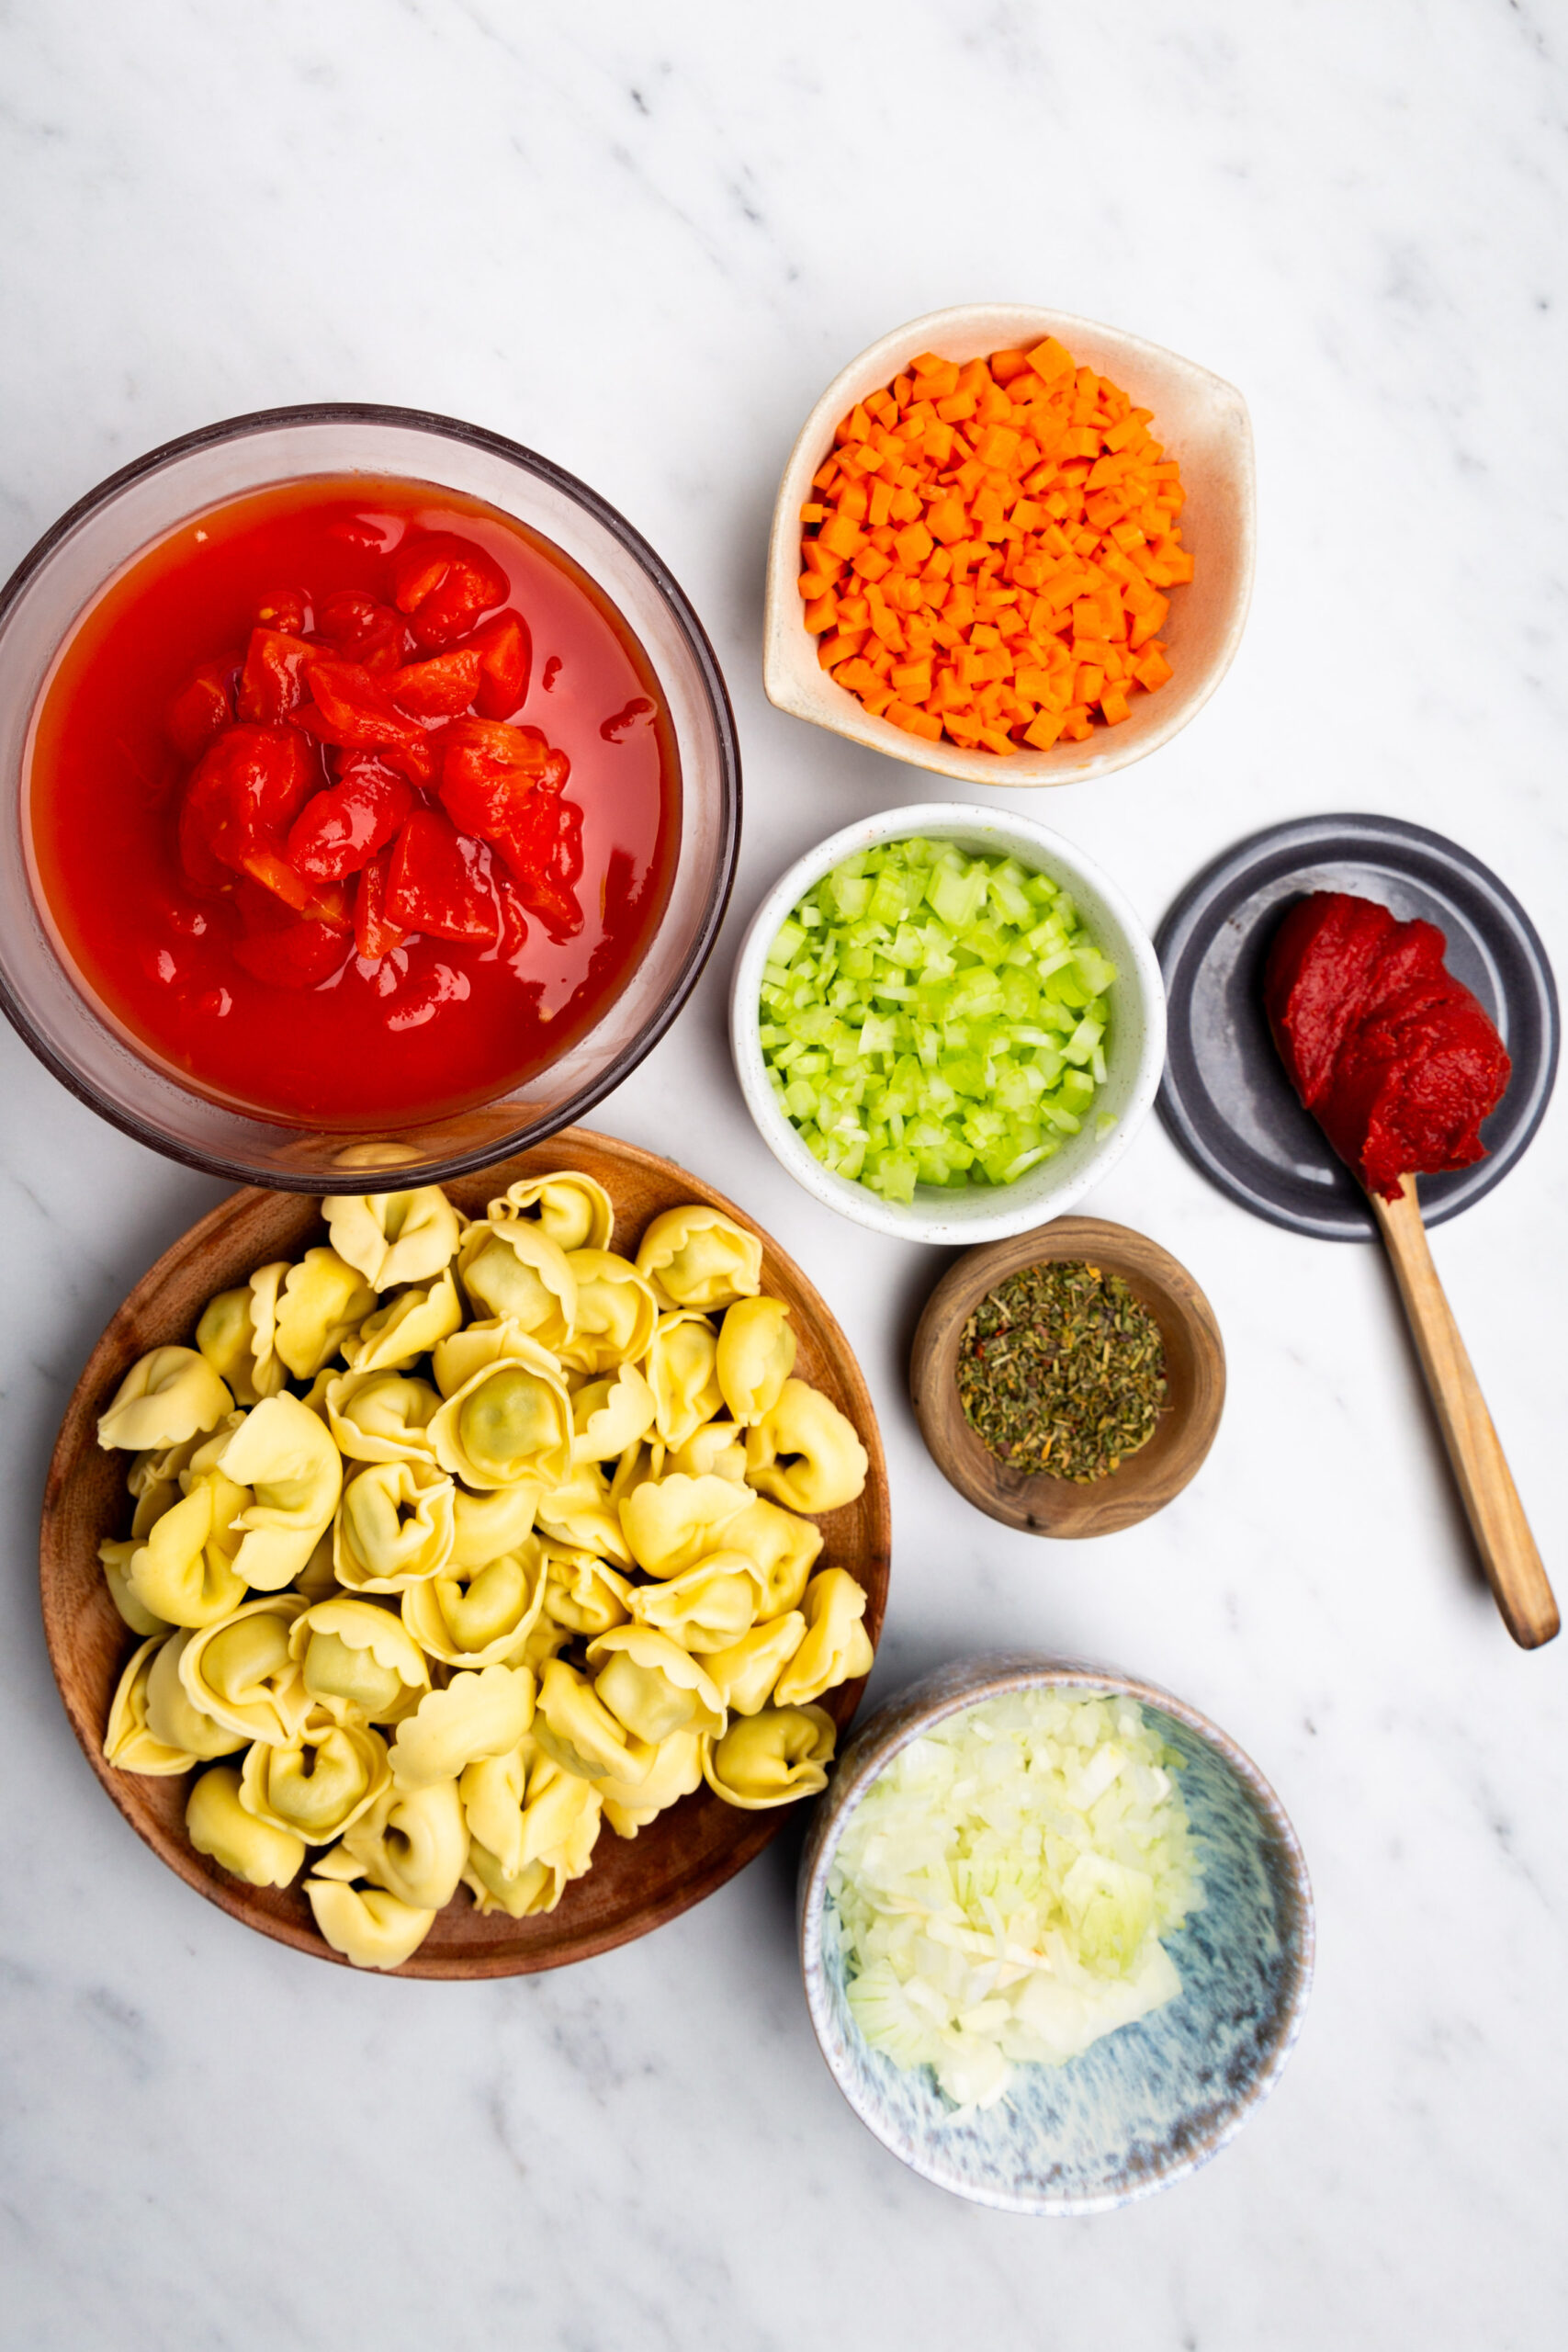 Descripción: Ingredientes para una sopa de tortellini saludable y rápida en salsa de tomate.